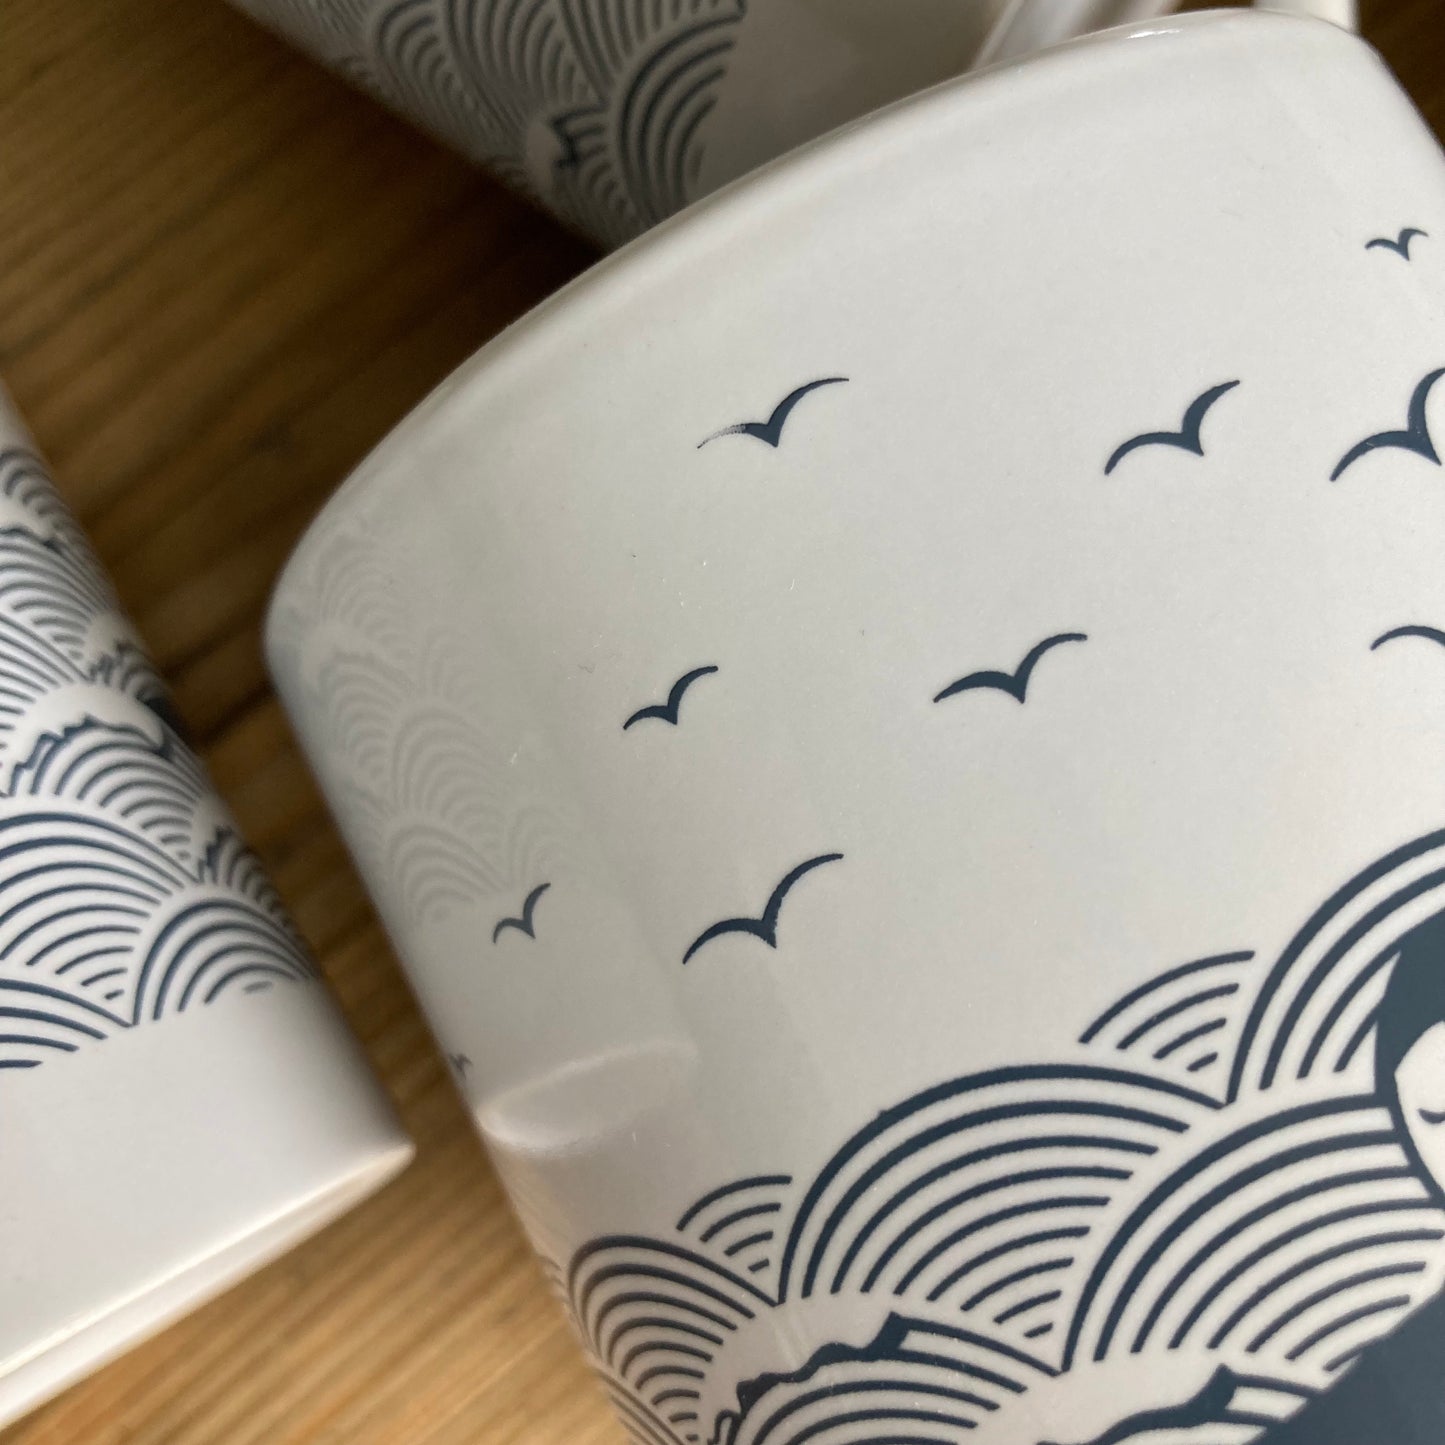 Slight seconds | 'Wild swims' ceramic mugs with gift box